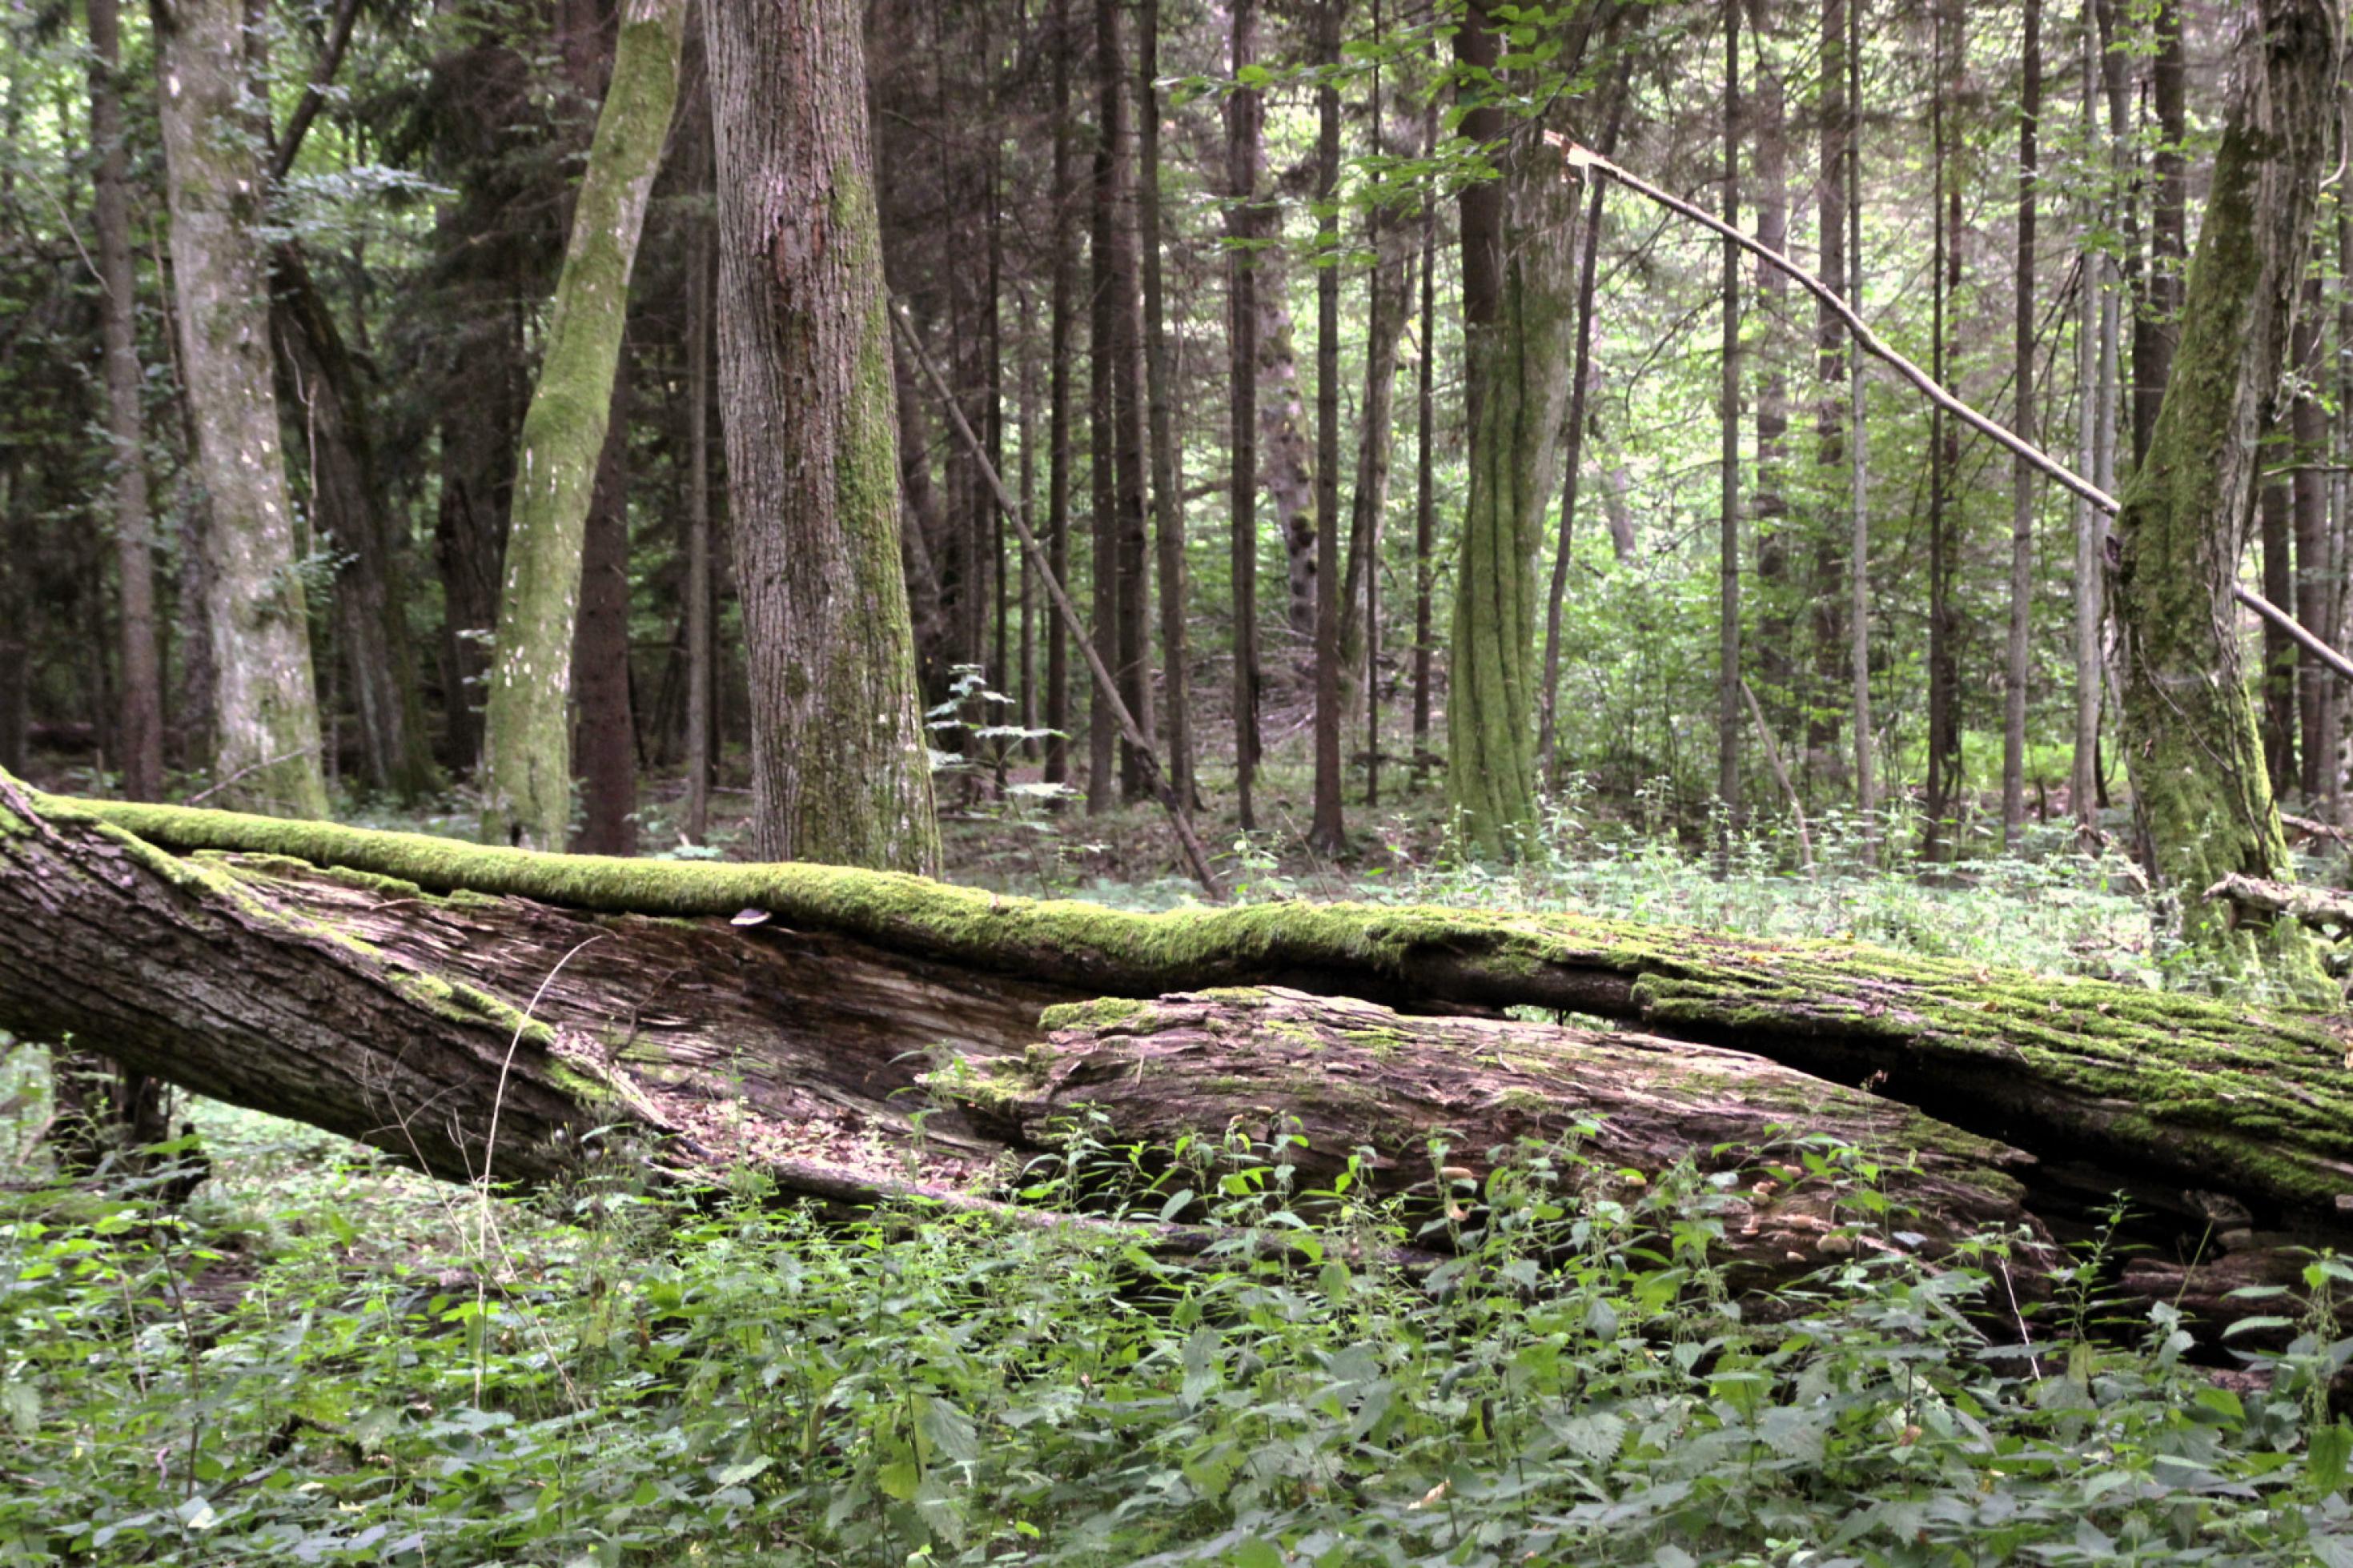 Morscher, moosbewachsener Baumstamm liegt auf dem Waldboden, Bäume im Hintergrund.